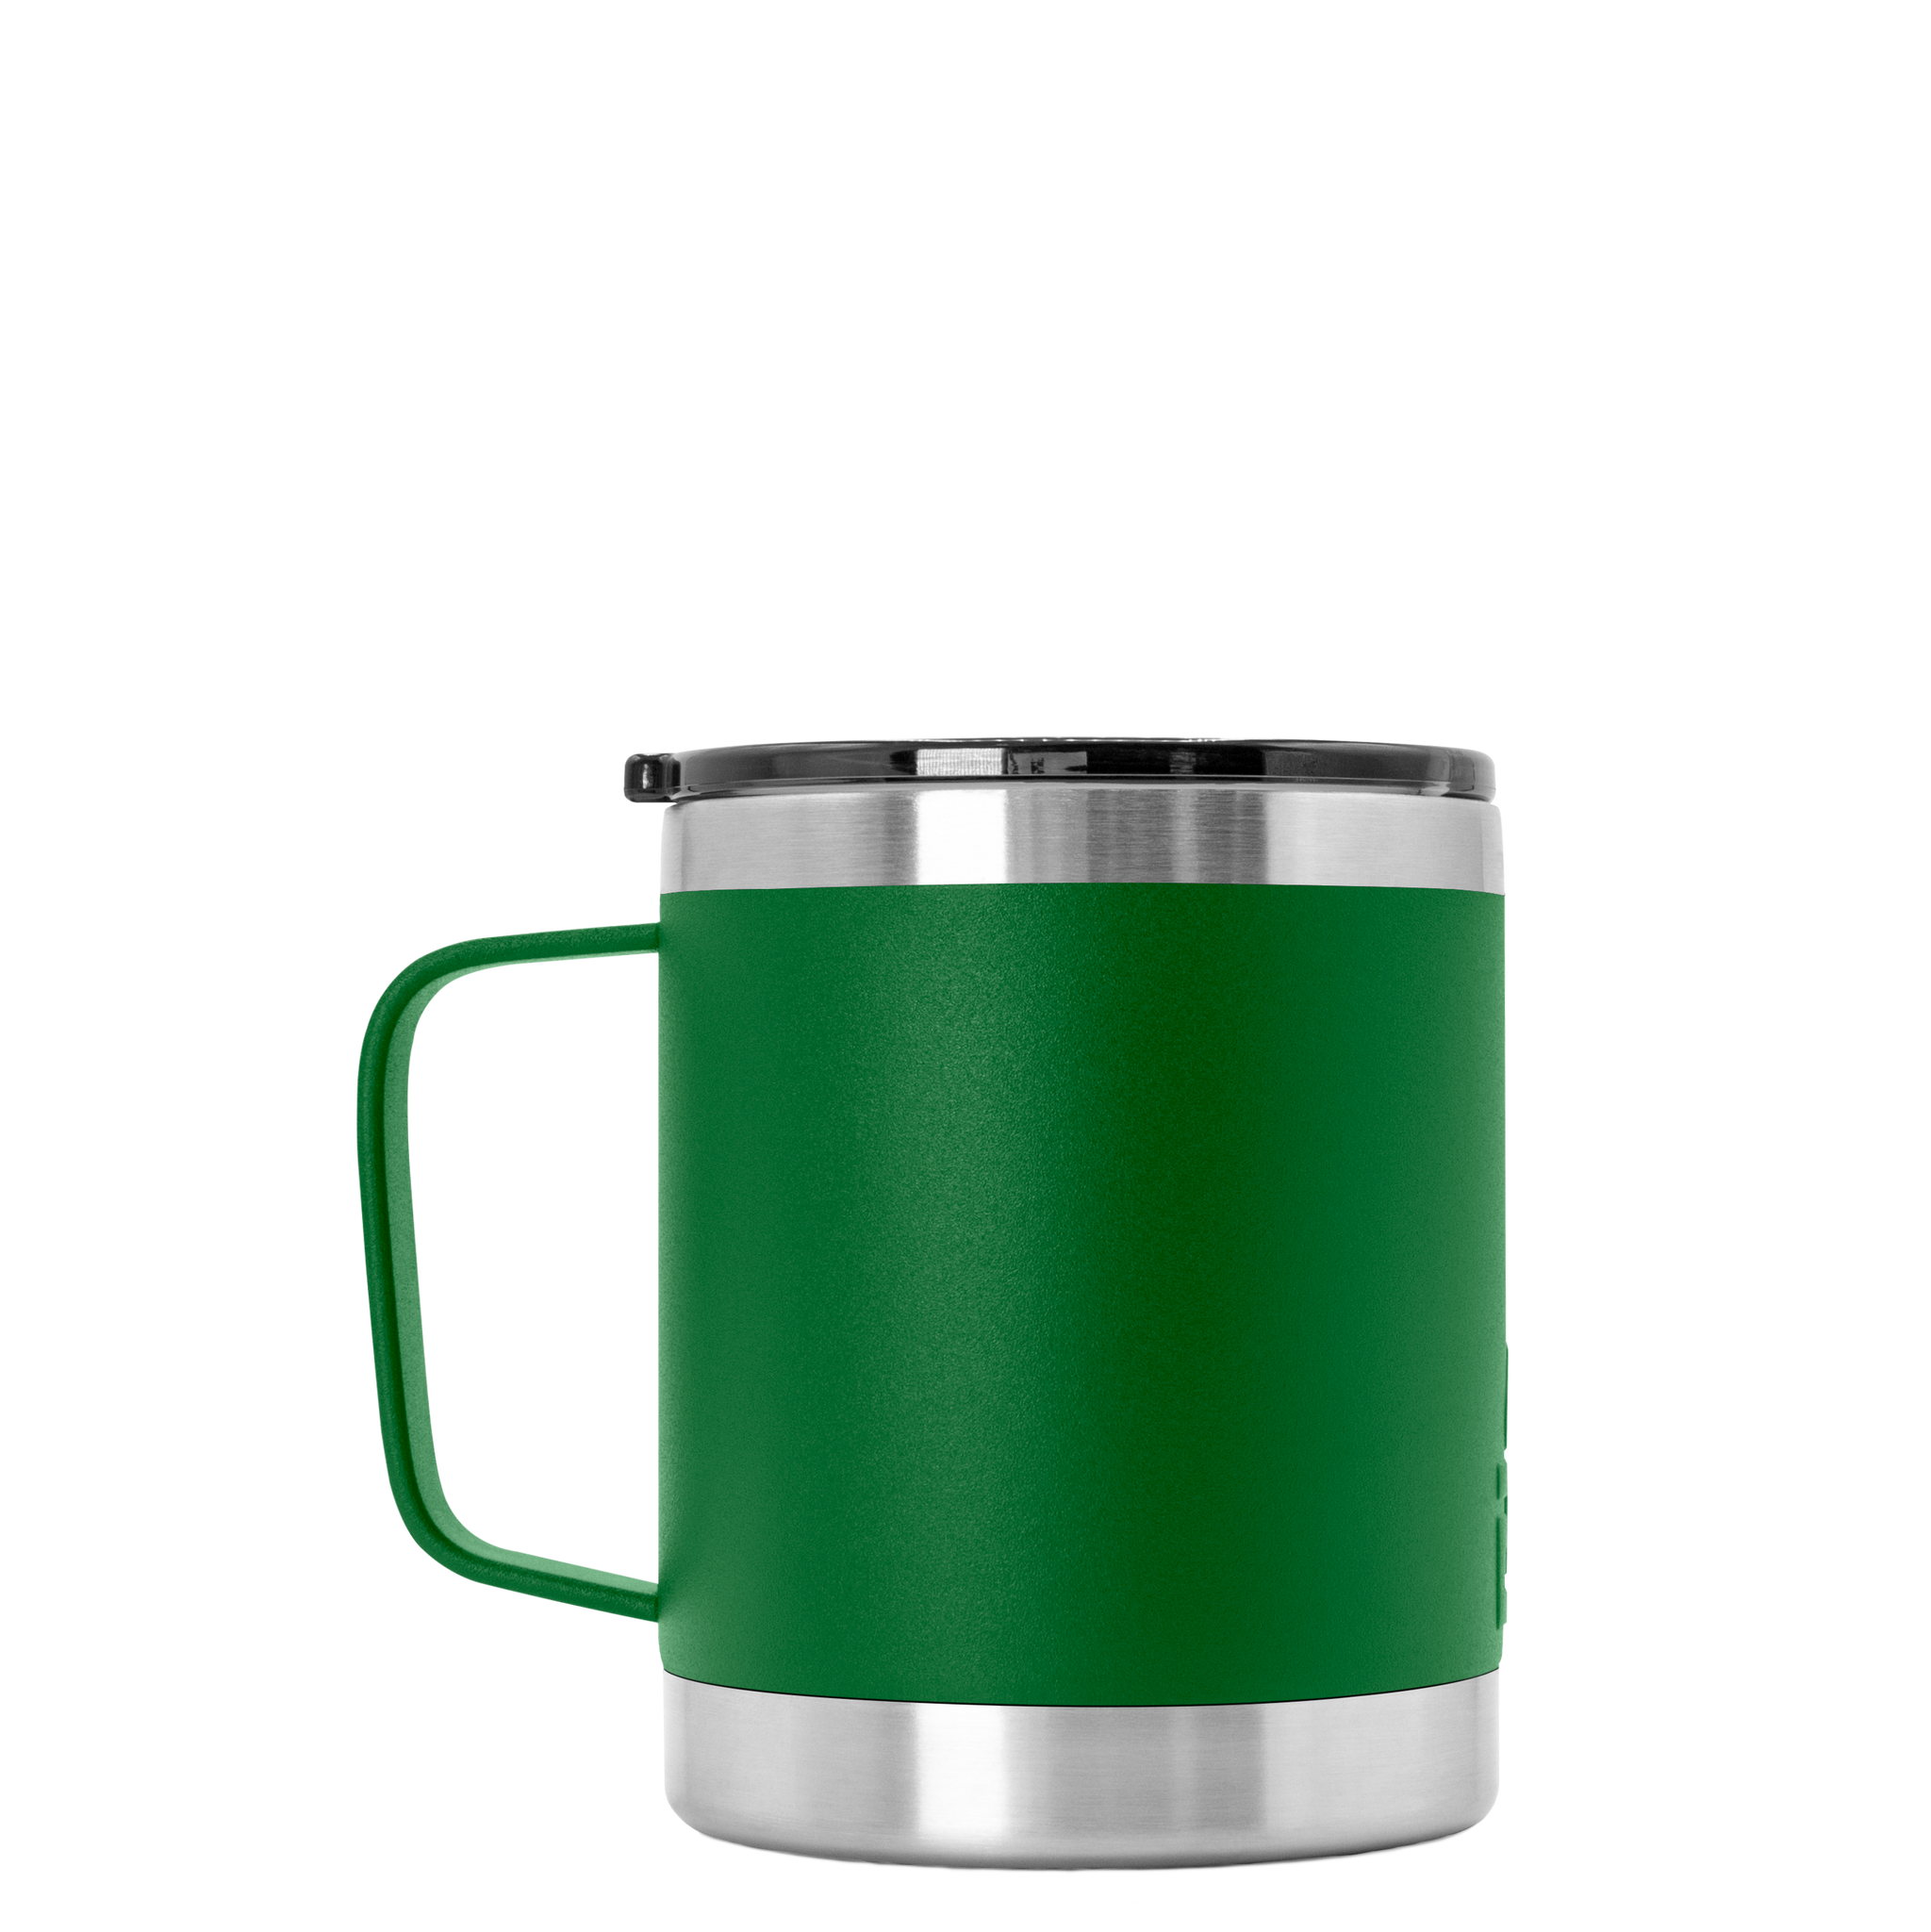 Green Metal Camping Mug